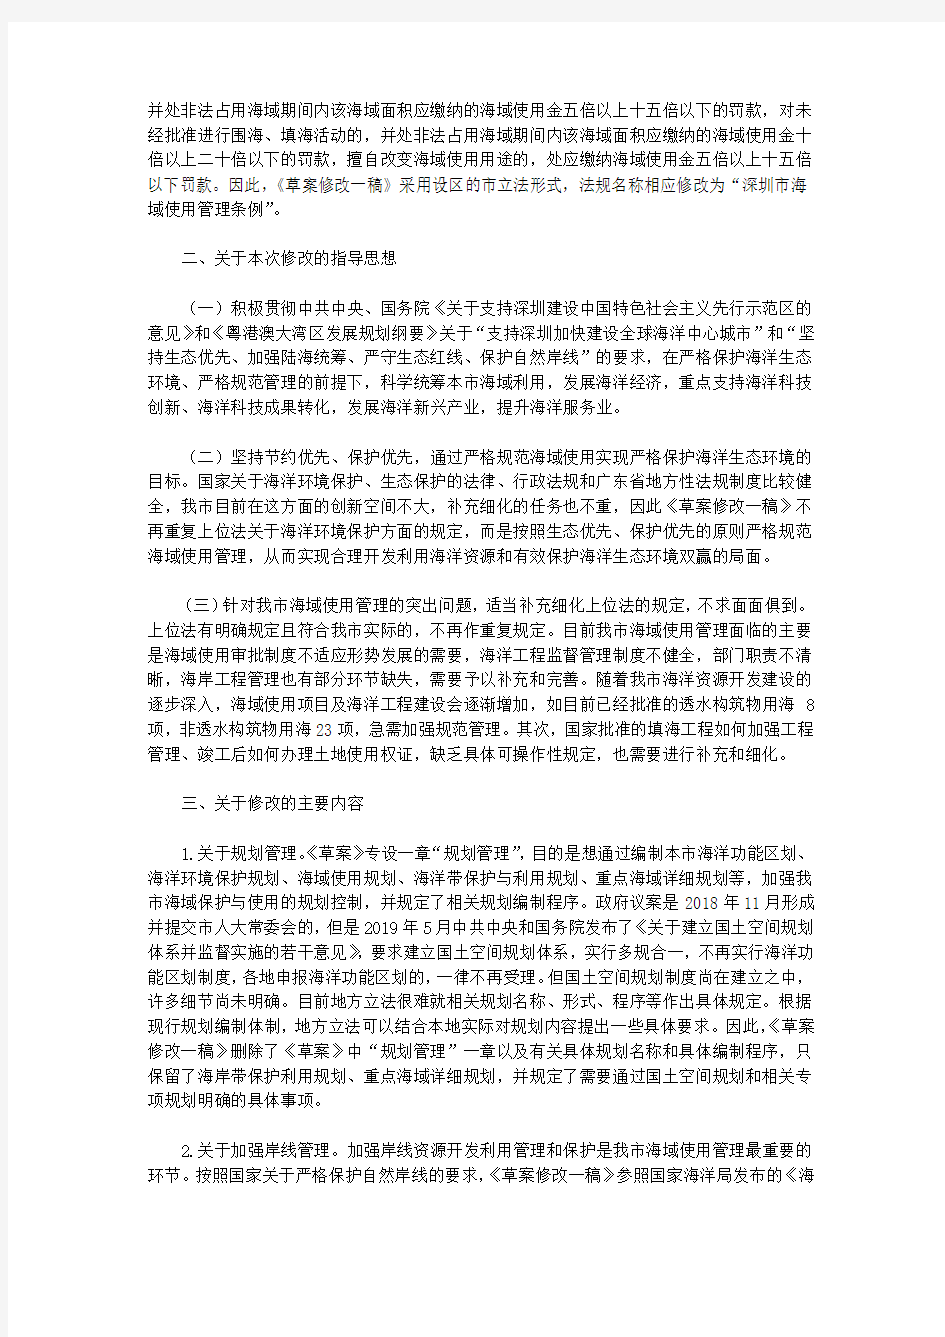 关于《深圳经济特区海域保护与使用条例(草案)》修改情况的说明和审议结果的报告